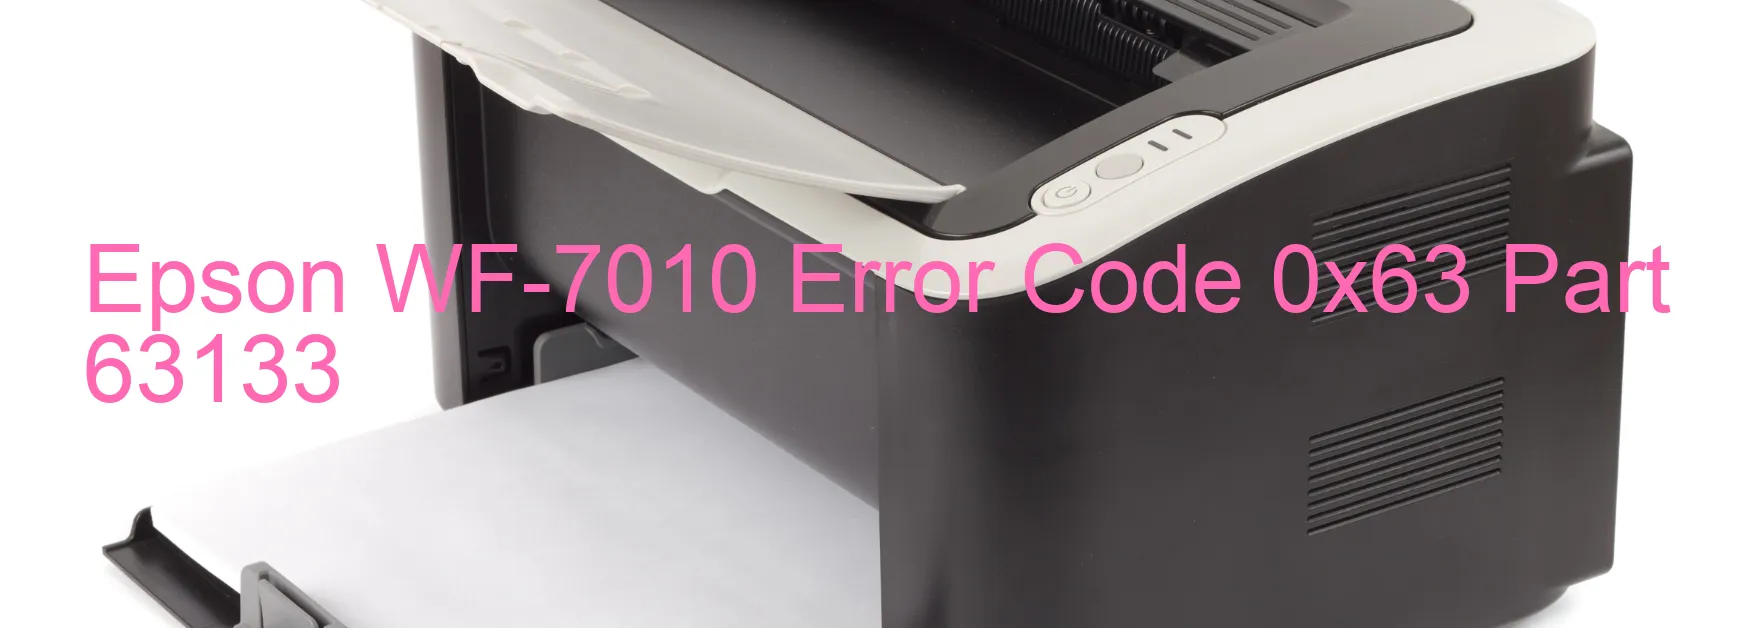 Epson WF-7010 Error Code 0x63 Part 63133